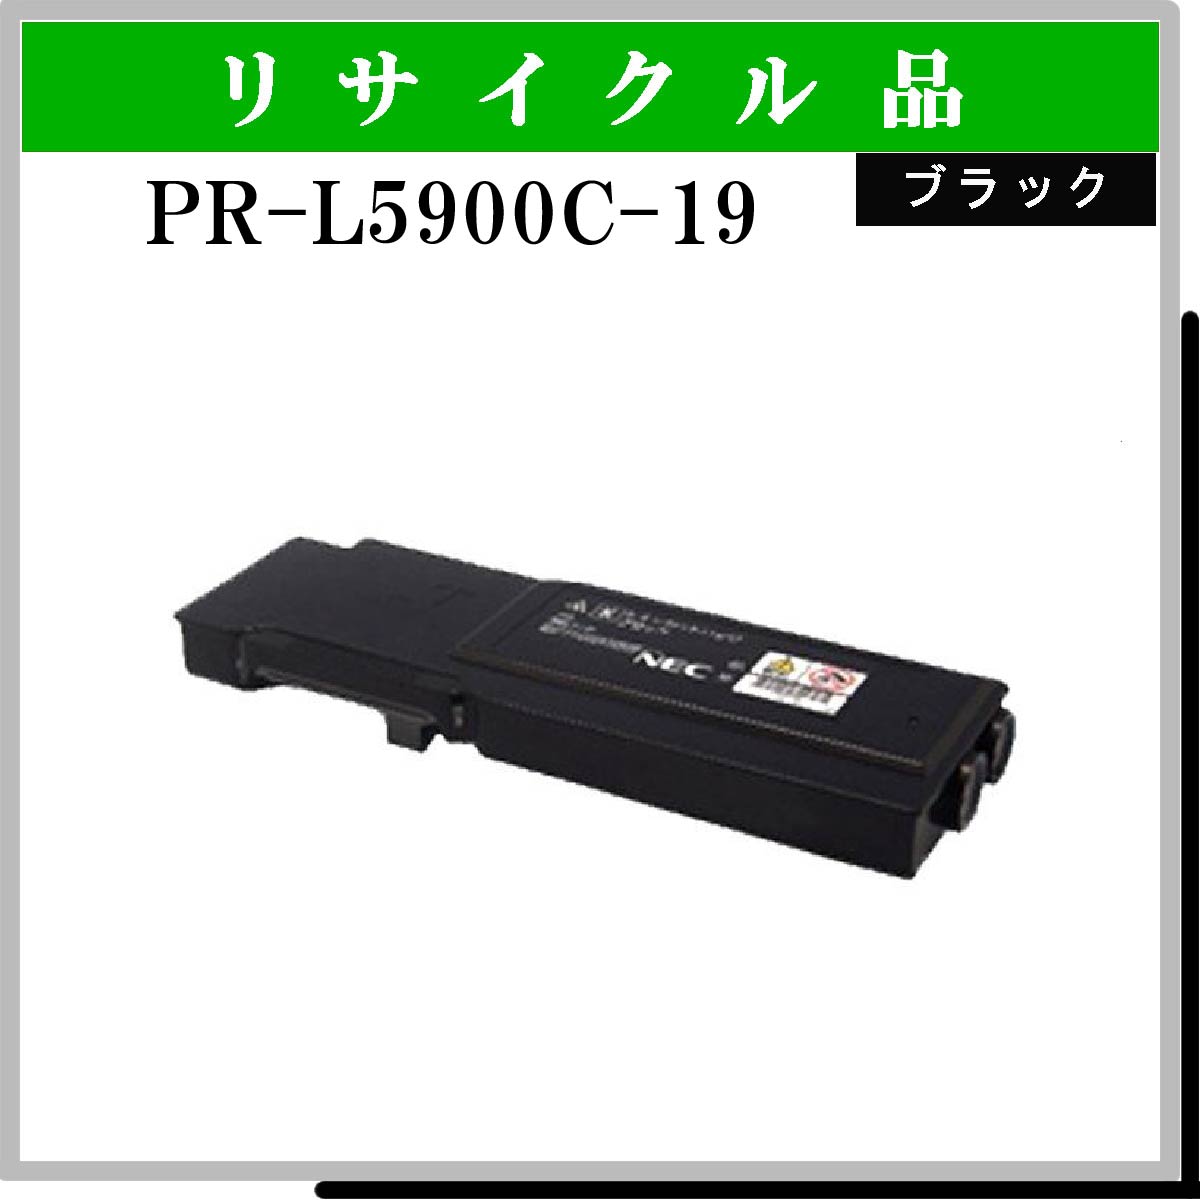 PR-L5900C-19